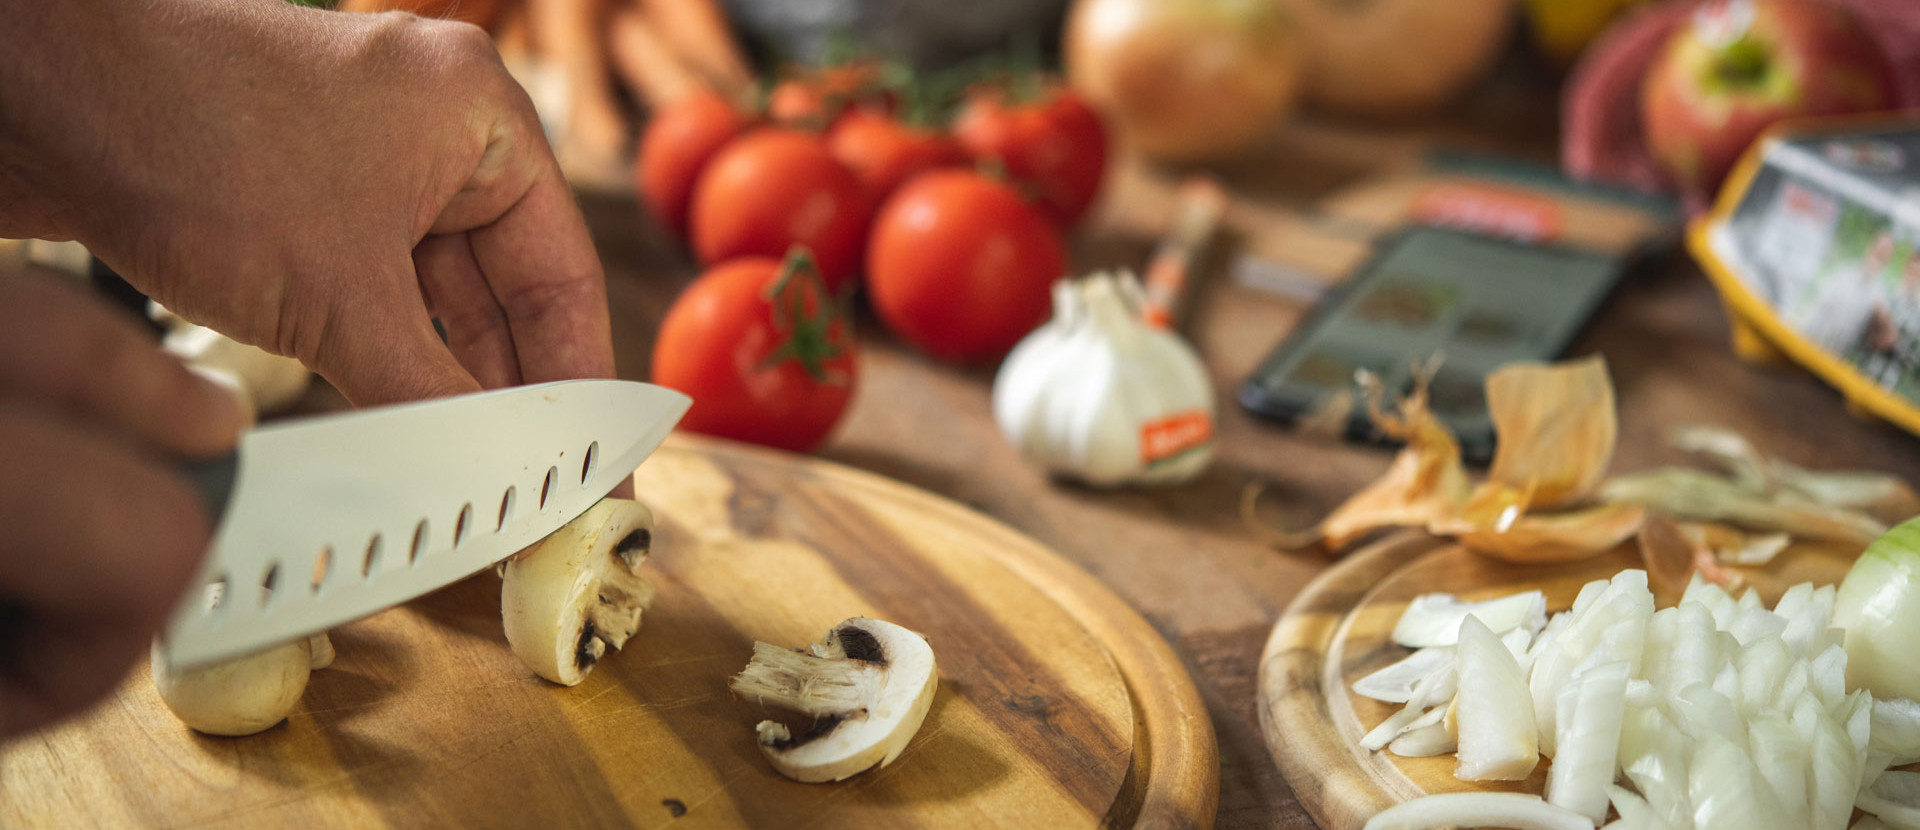 Kochwerkstatt schneiden mit Messer von pilzen auf holzbrett neben gemuese